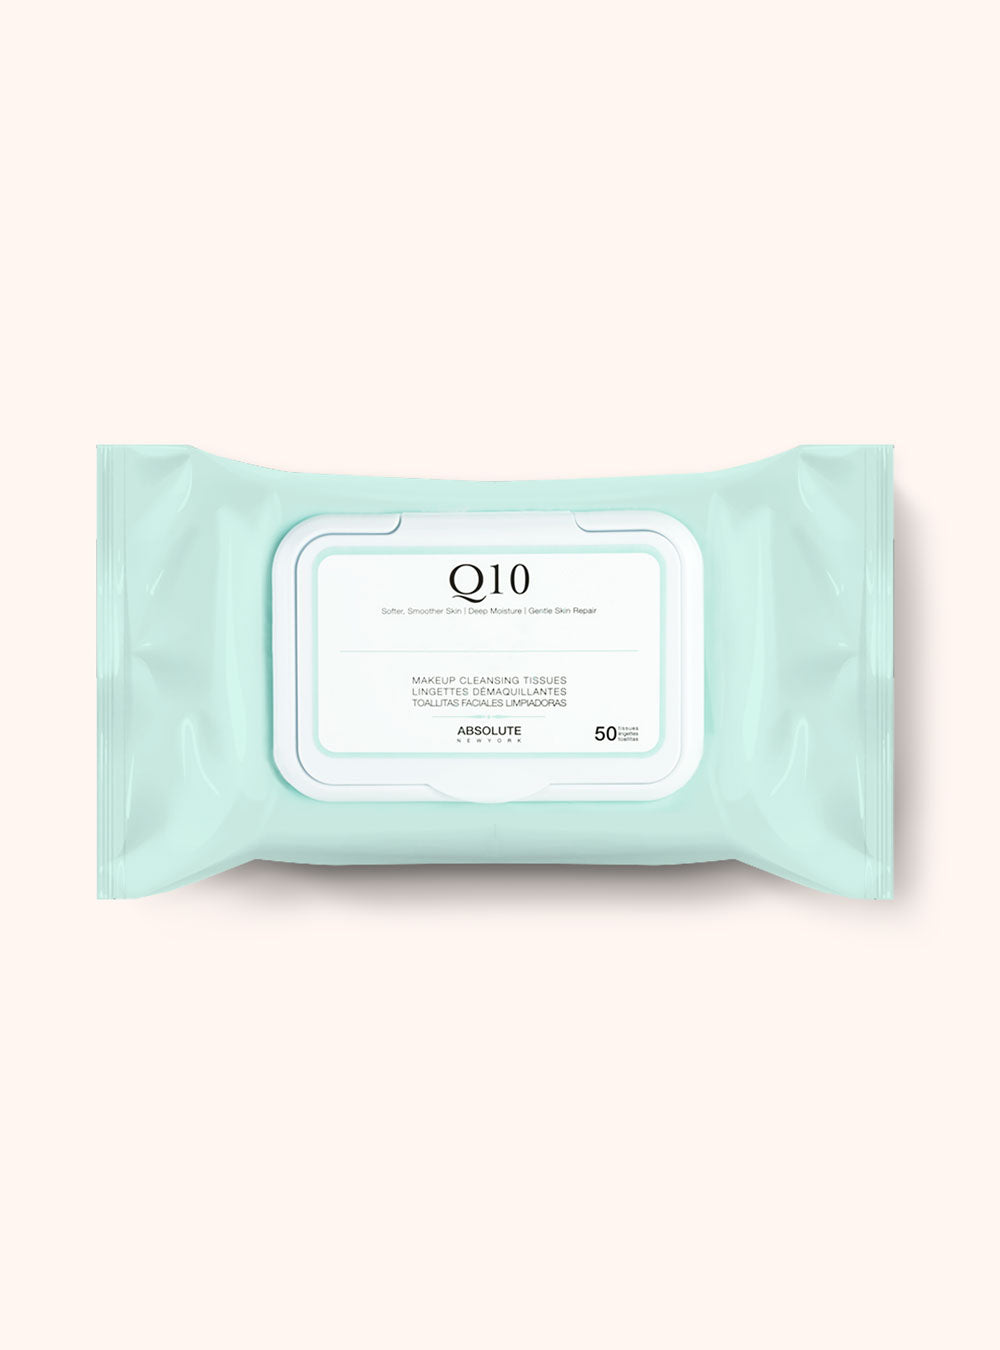 Premium Makeup Cleansing Tissues || Q10